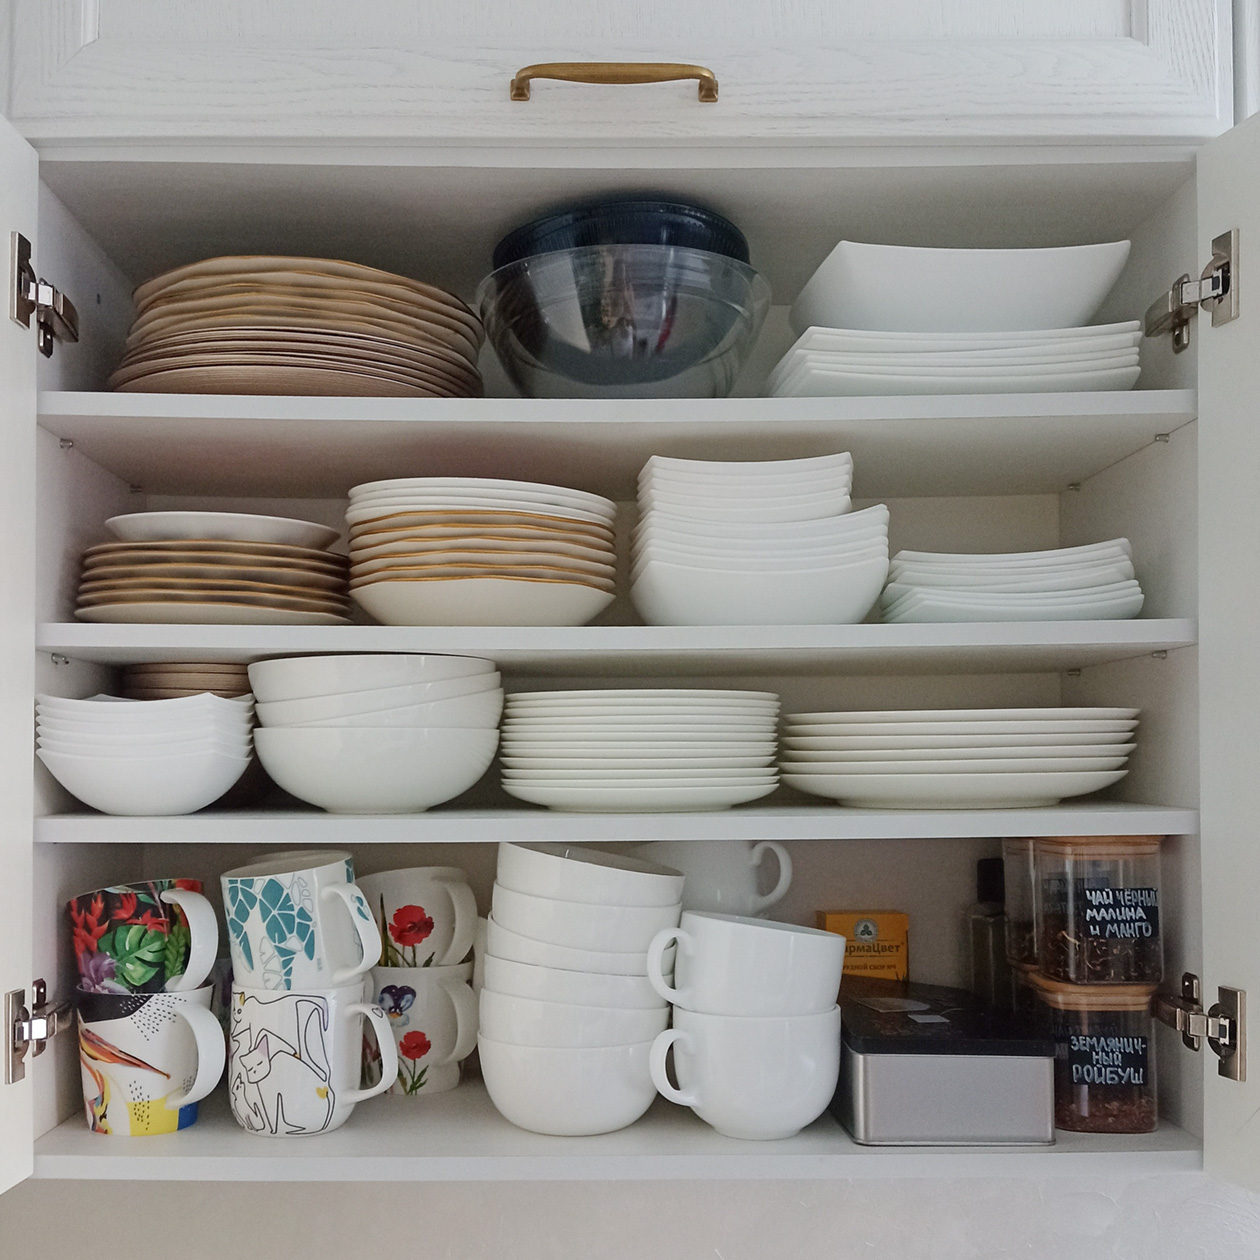 В этом шкафчике я храню посуду для повседневного использования — здесь около 130 предметов